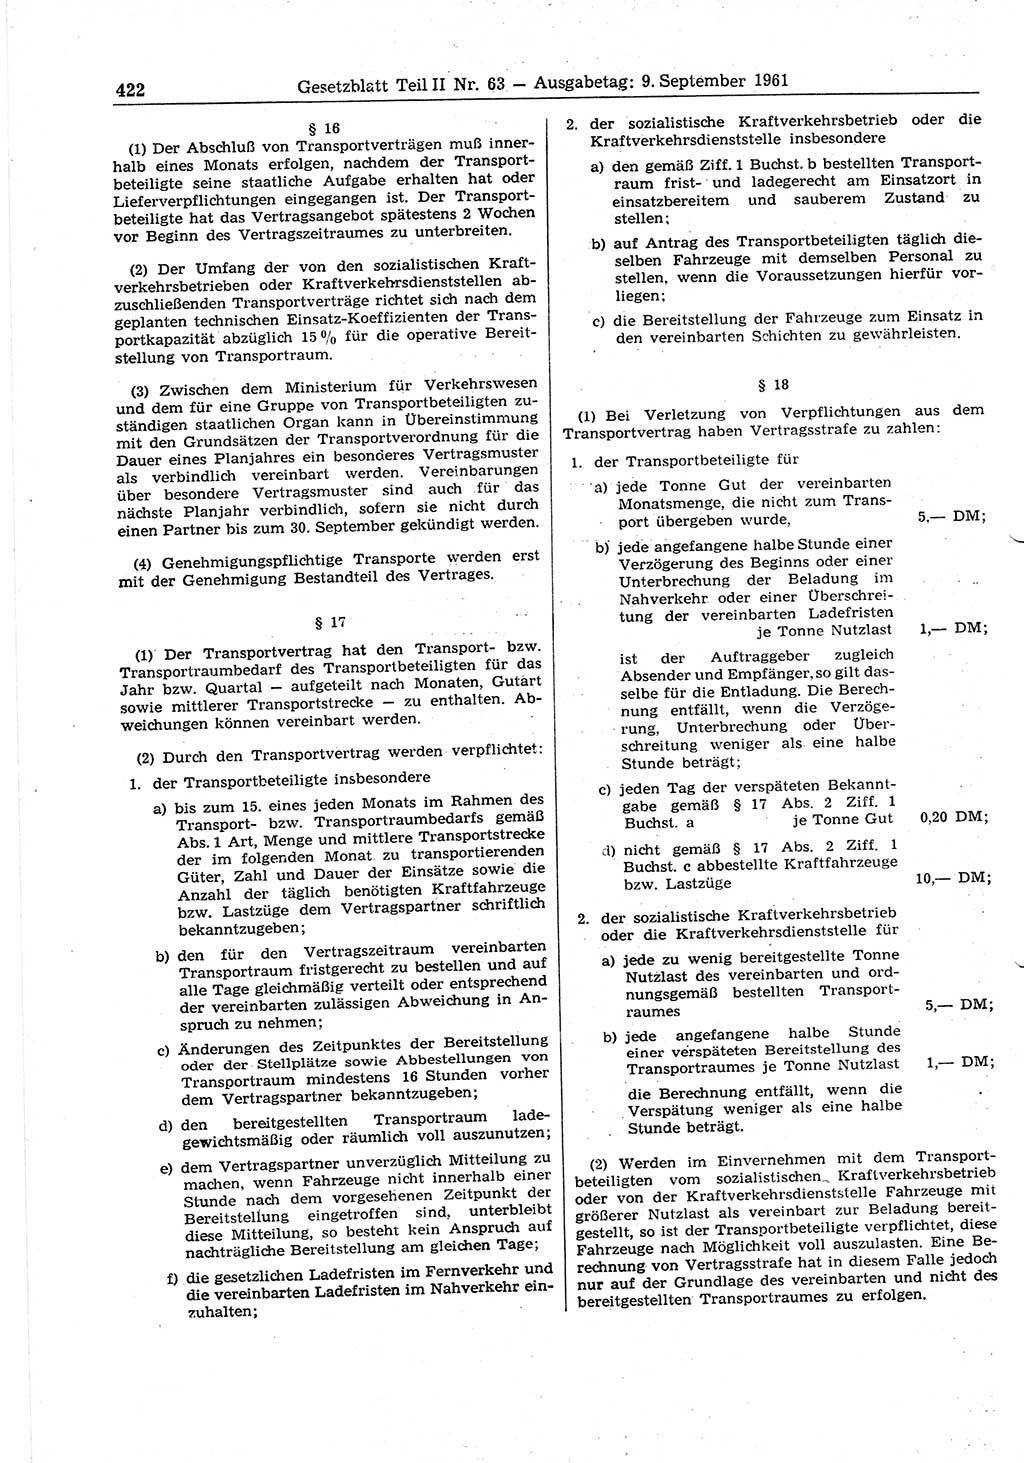 Gesetzblatt (GBl.) der Deutschen Demokratischen Republik (DDR) Teil ⅠⅠ 1961, Seite 422 (GBl. DDR ⅠⅠ 1961, S. 422)